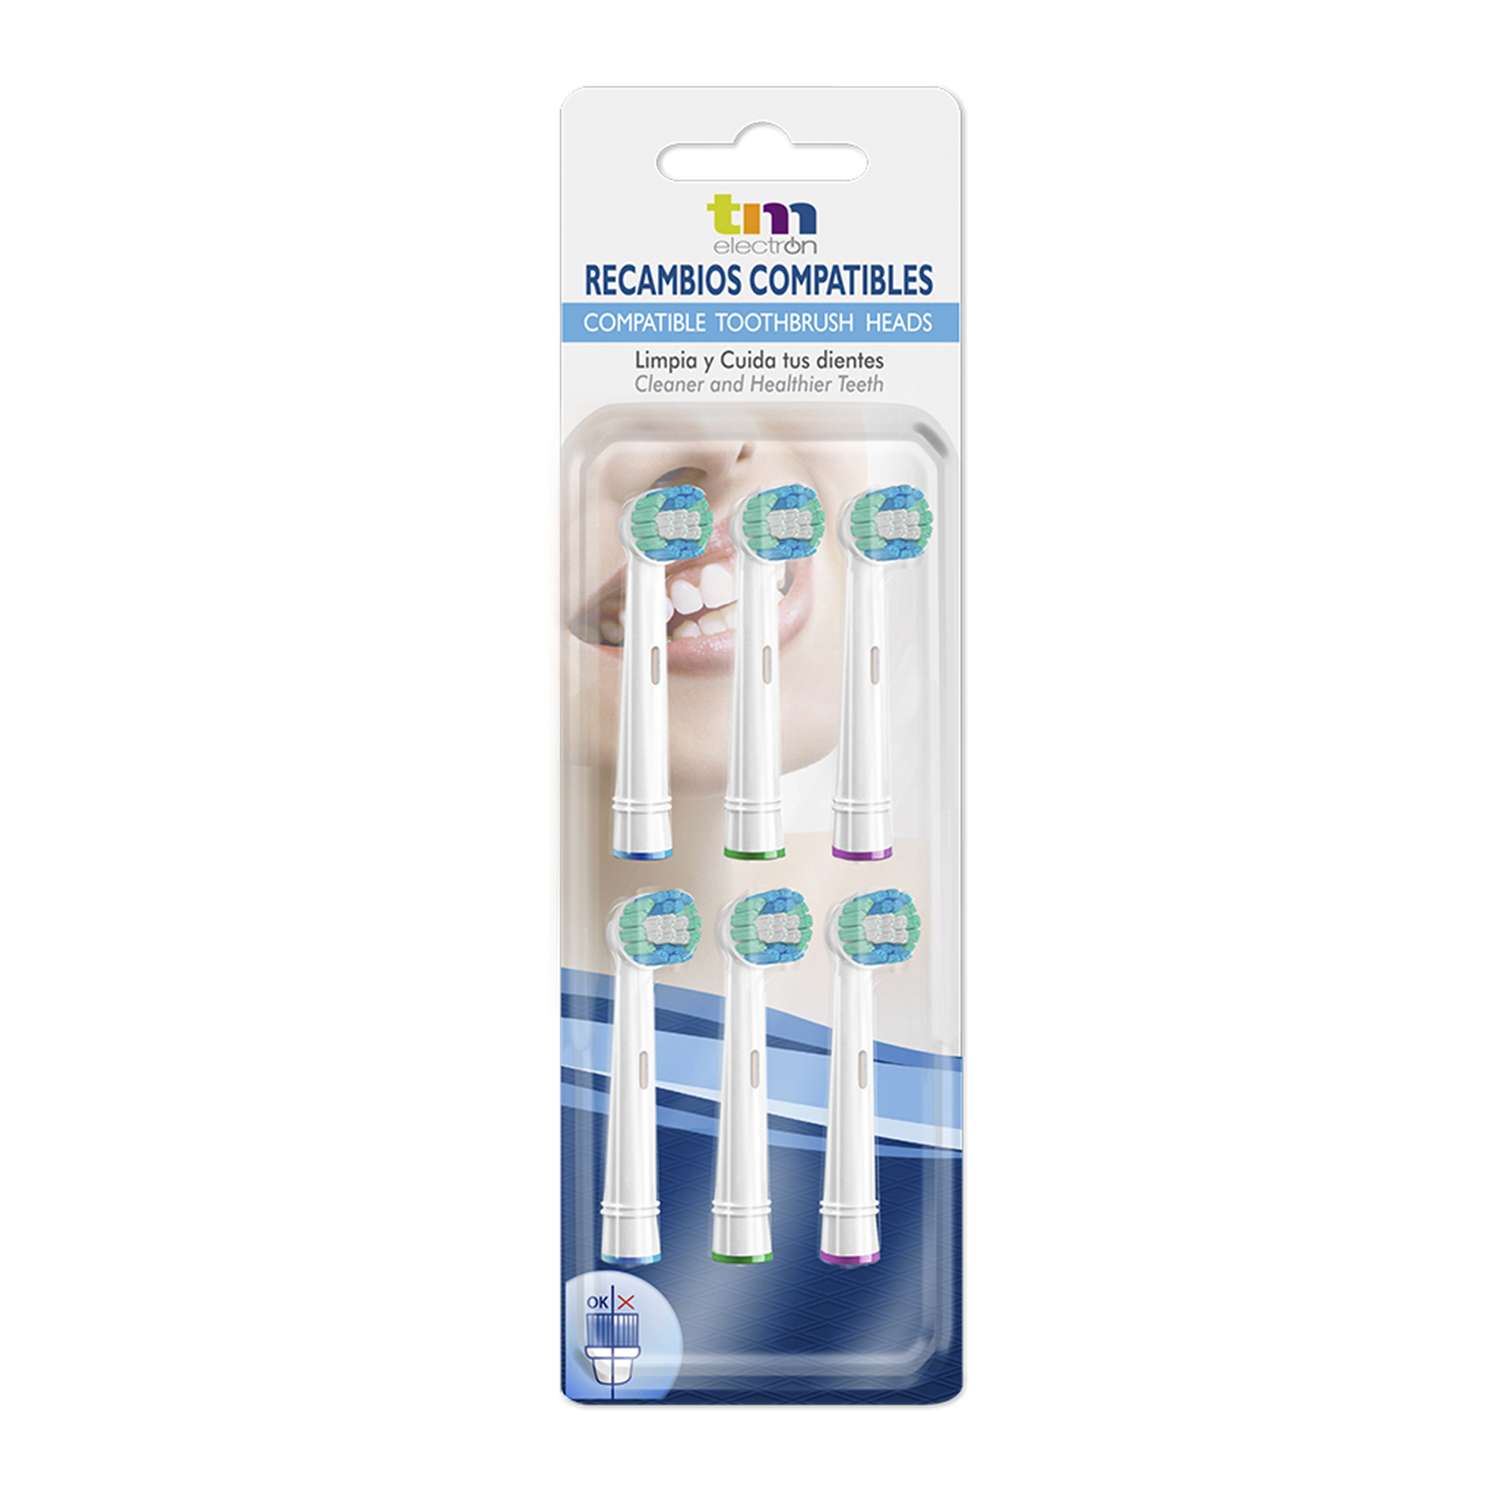 Recambio cepillo eléctrico compatible x 6 - TM Electron